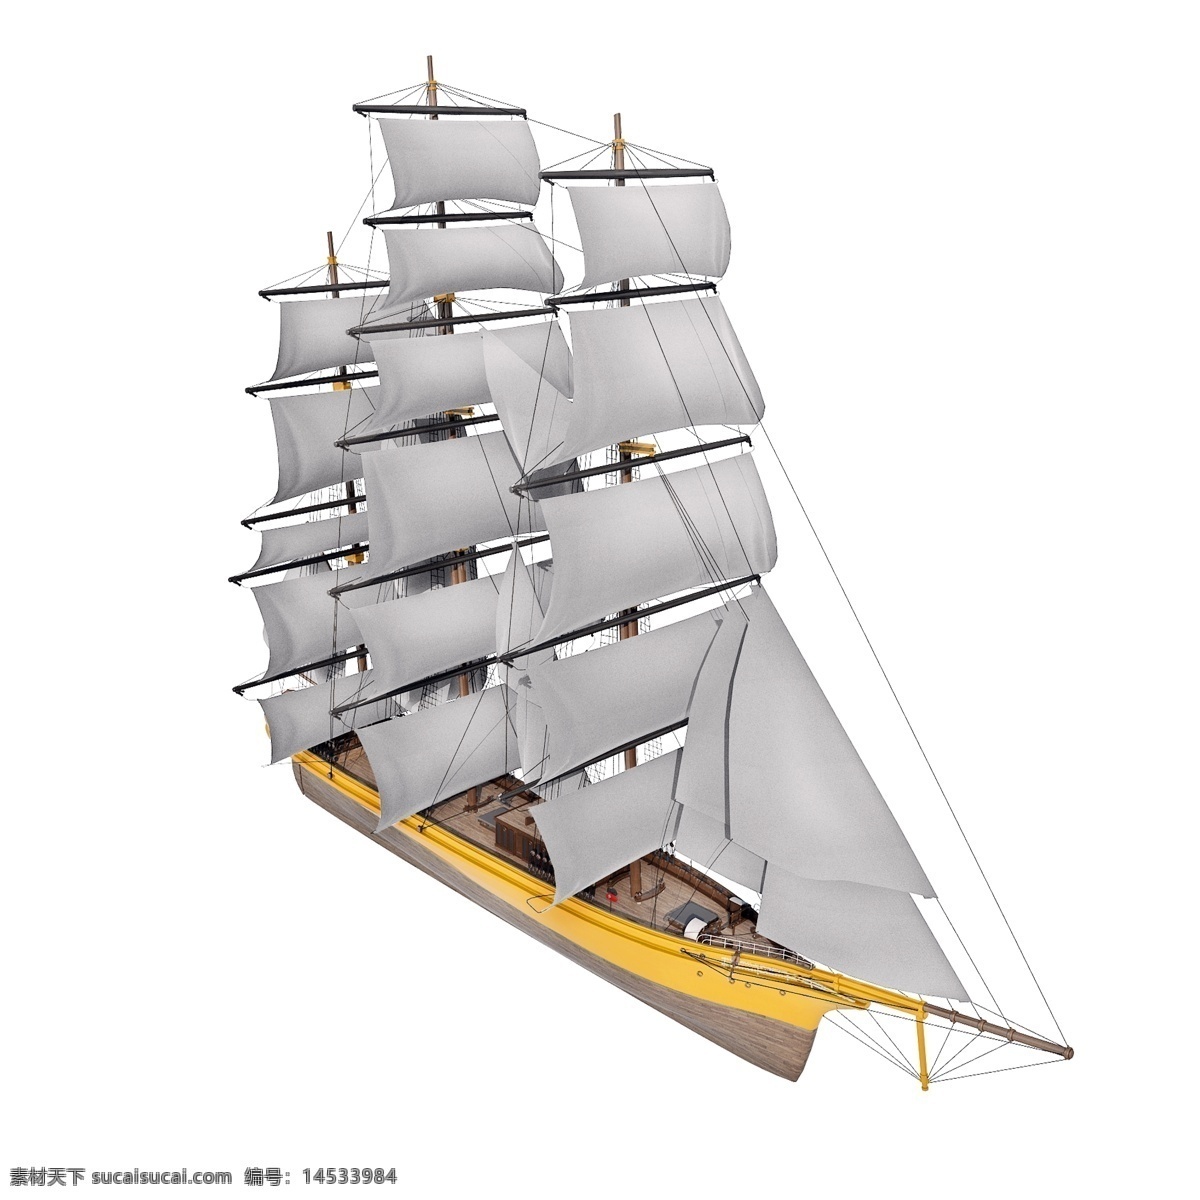 立体 大船 图 复古 精致 仿真 帆船 夏季 出海 航行 质感 套图